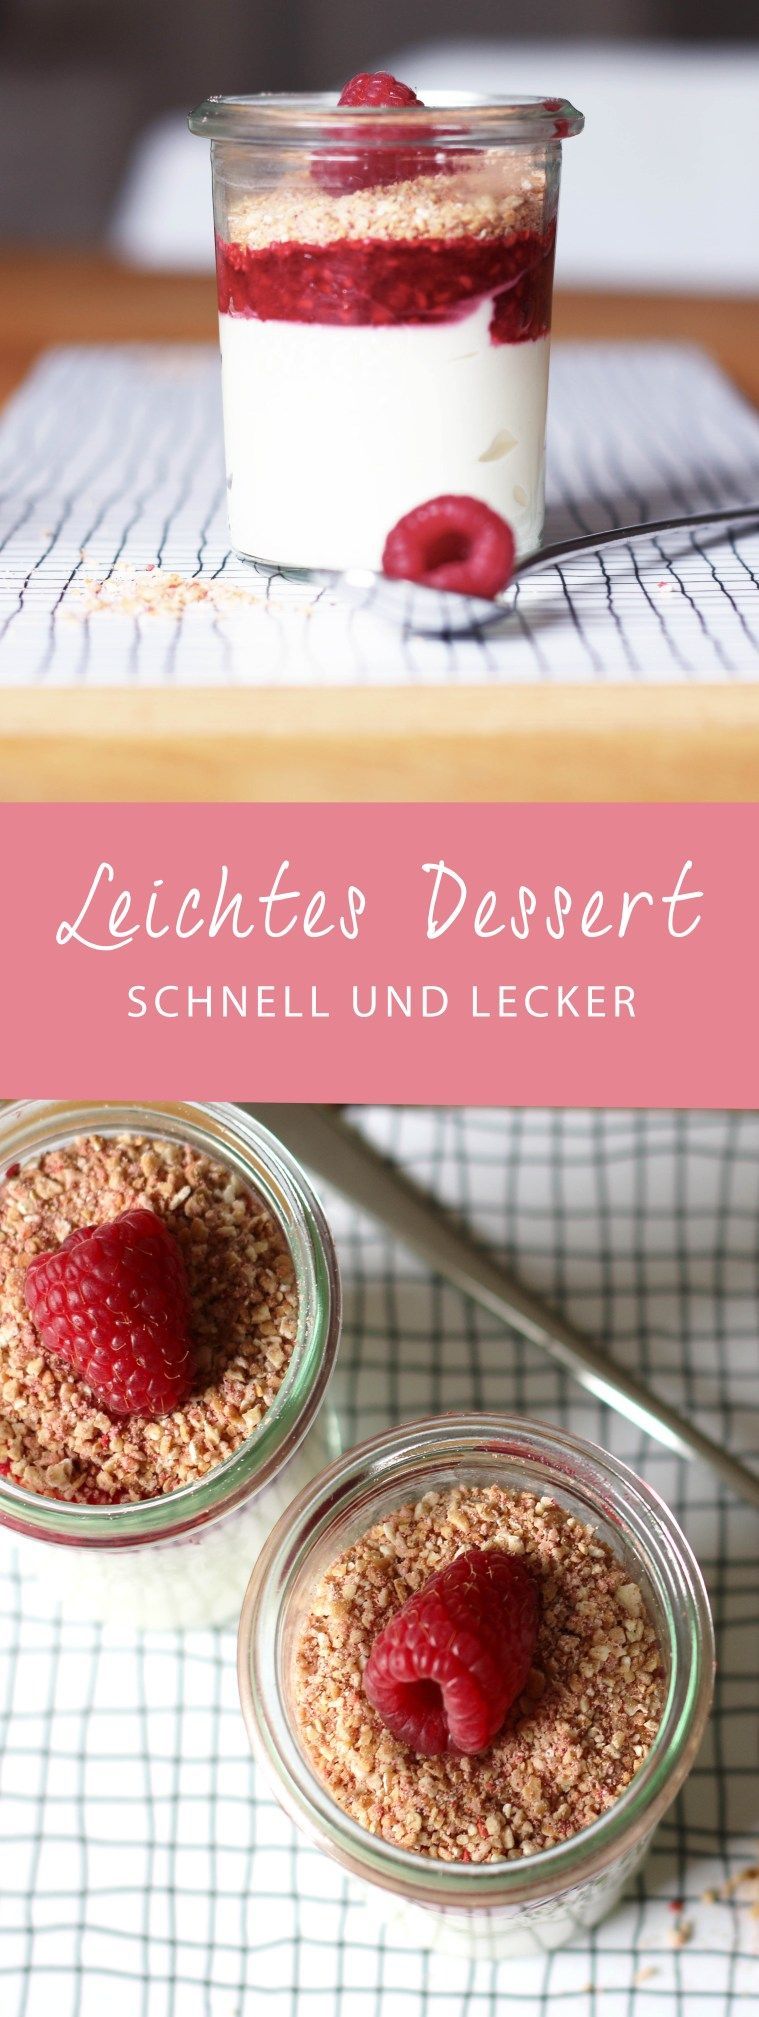 Rezept // Himbeer Nachtisch und ein Sommerbaby #2 -   17 desserts Im Glas hochzeit ideas